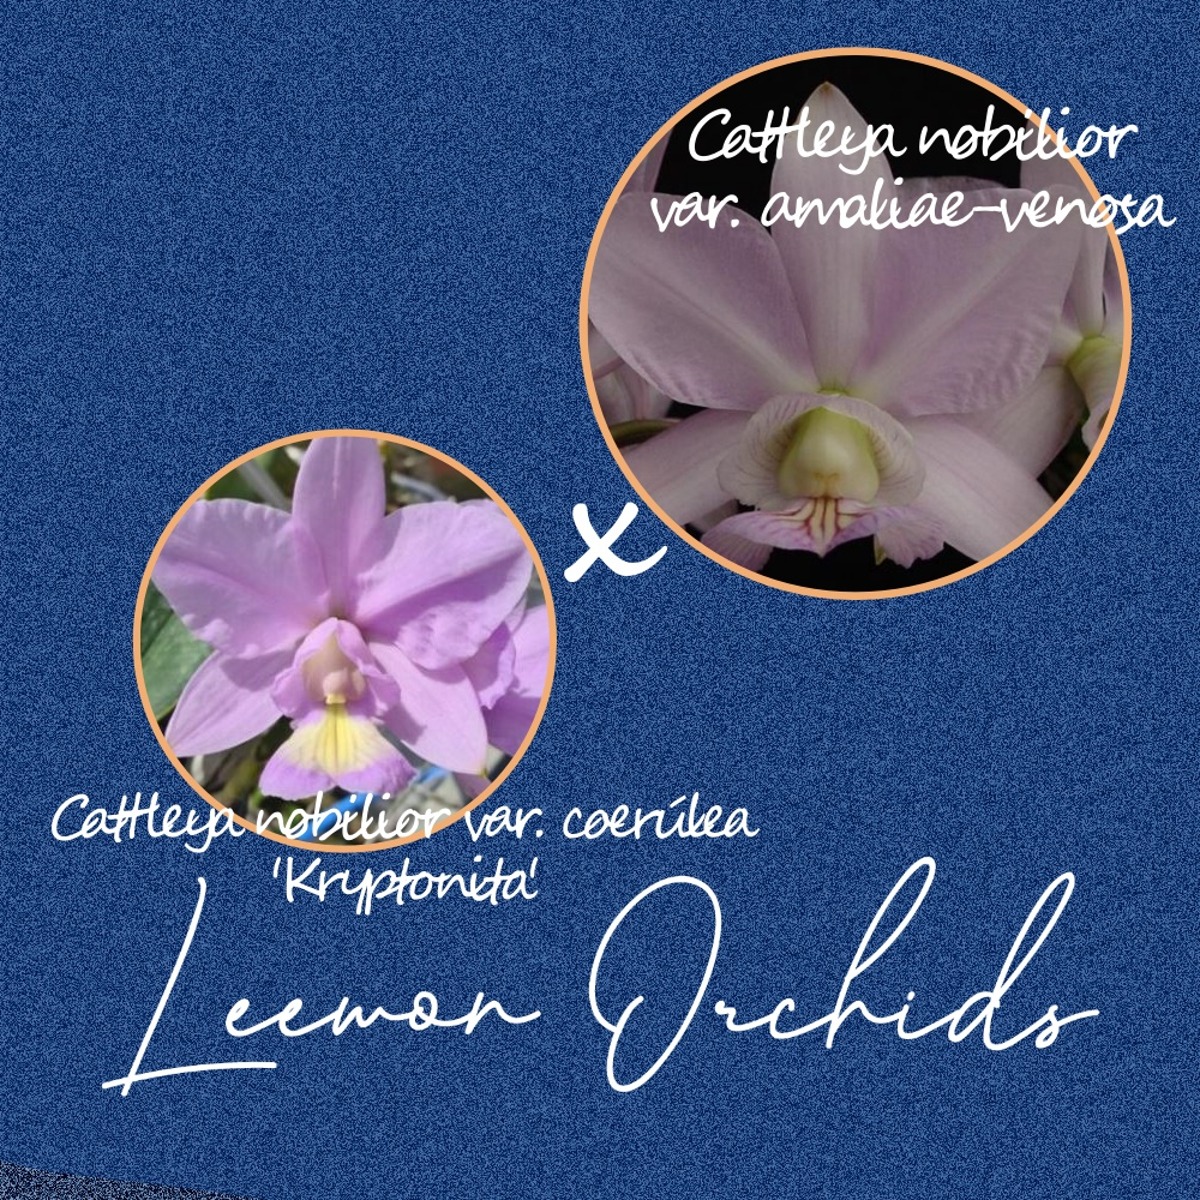 [브라질 KRYXV] Cattleya nobilior var. coerúlea &#039;Kryptonita&#039; x amaliae-venosa (유묘)